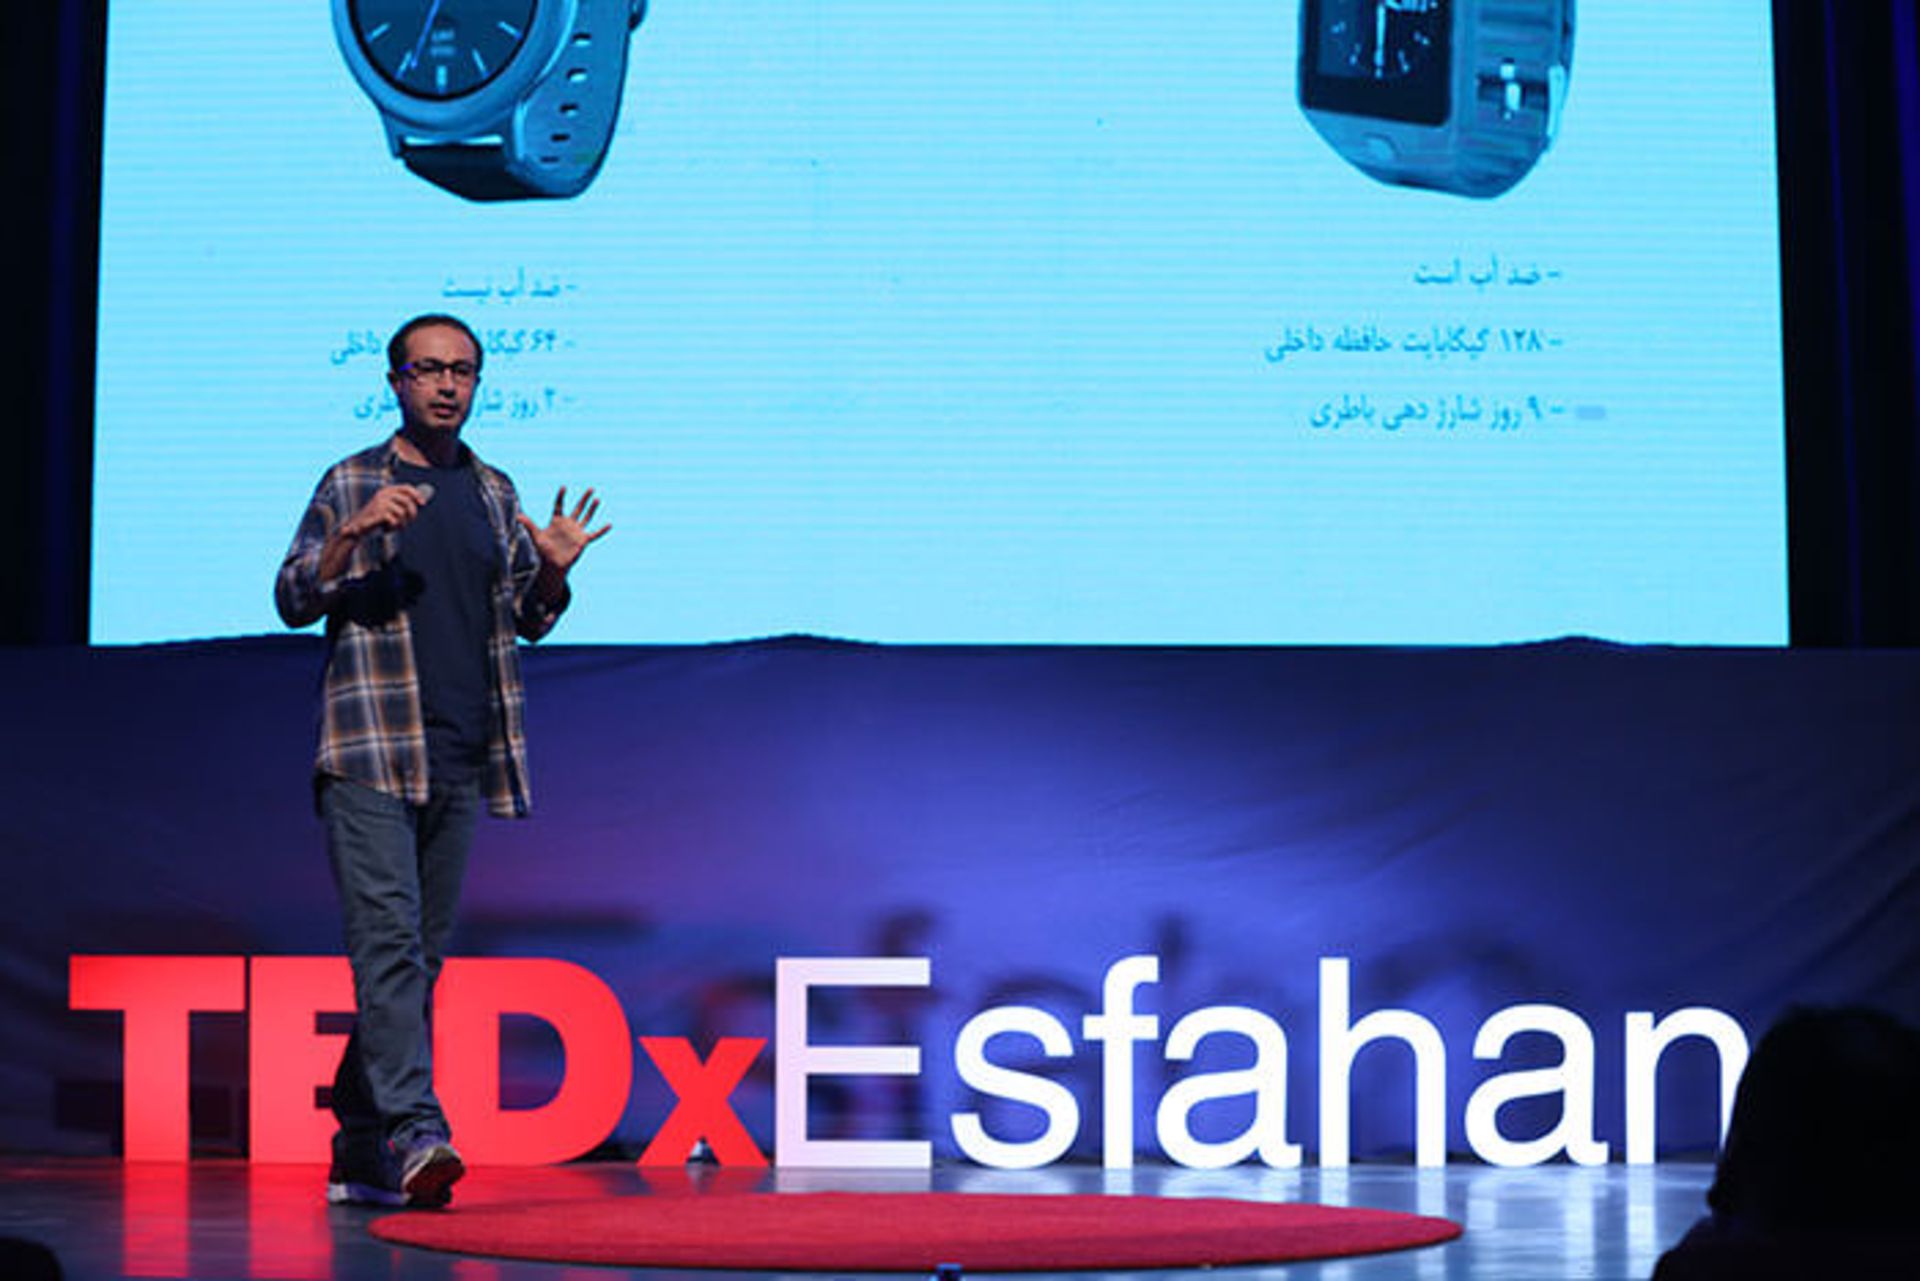 مرجع متخصصين ايران تدكس اصفهان / TEDx Esfahan